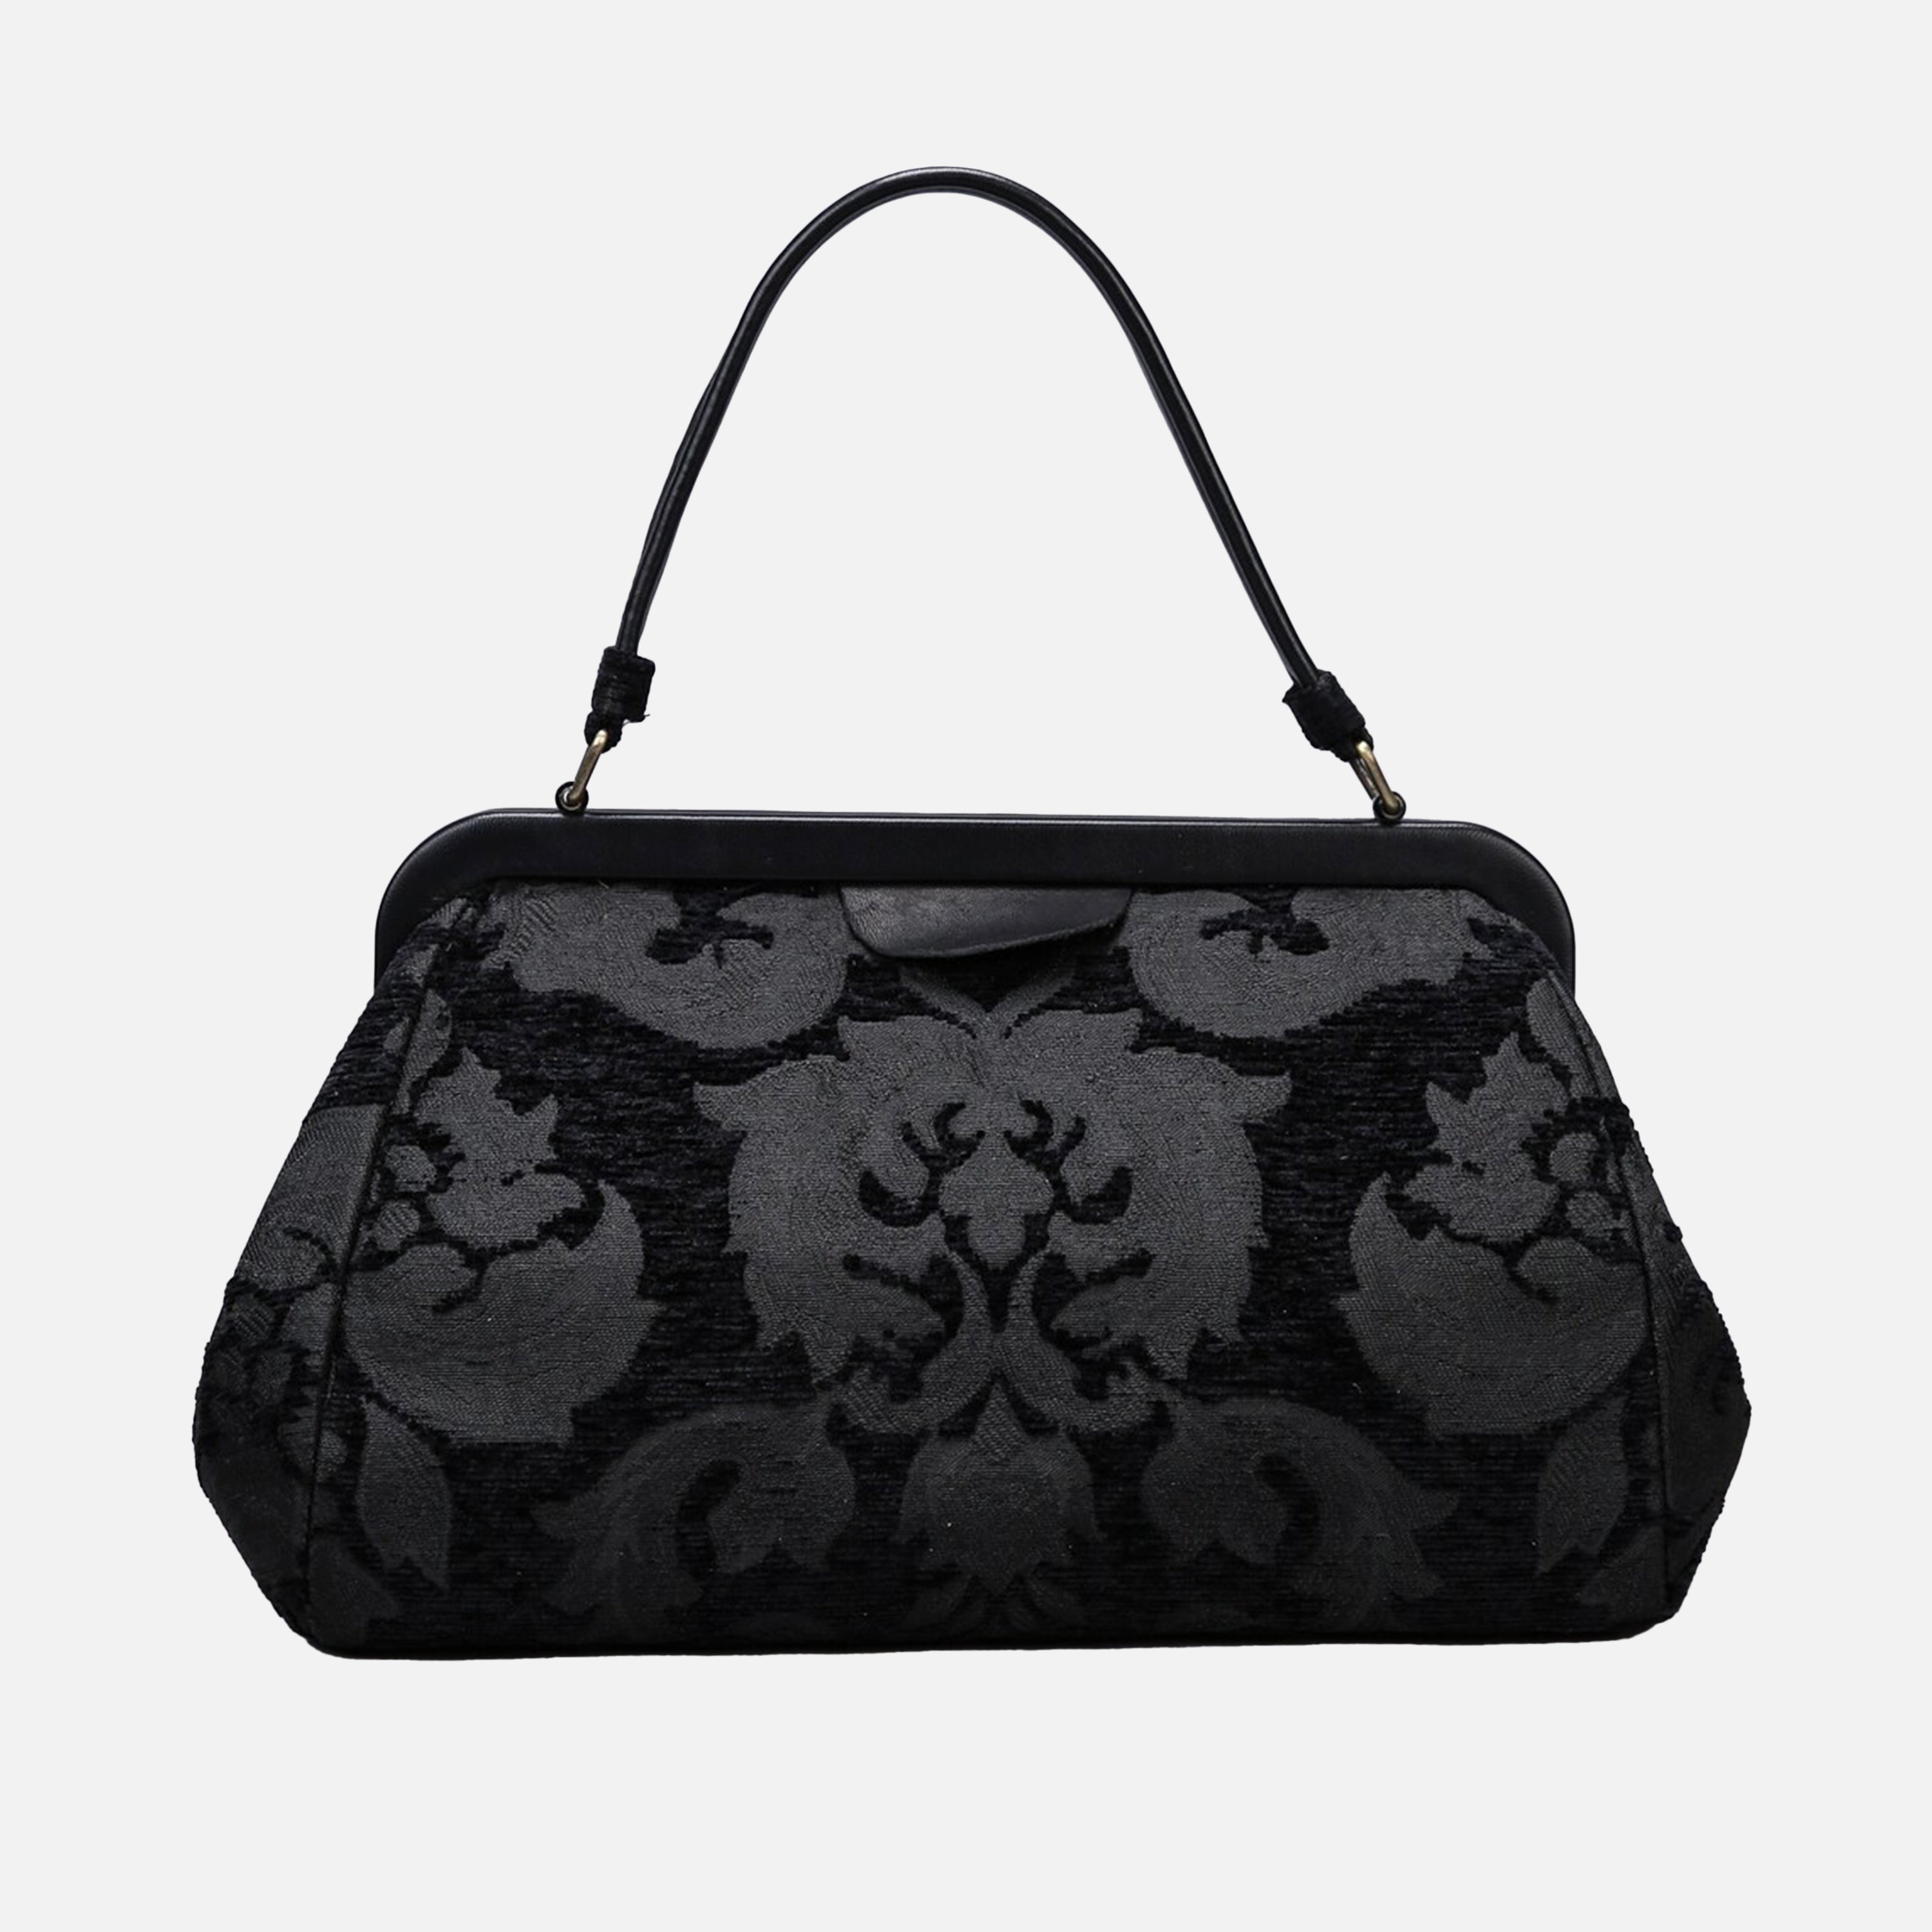 Victorian Blossom Black Top Handle Purse carpet bag MCW Handmade-2